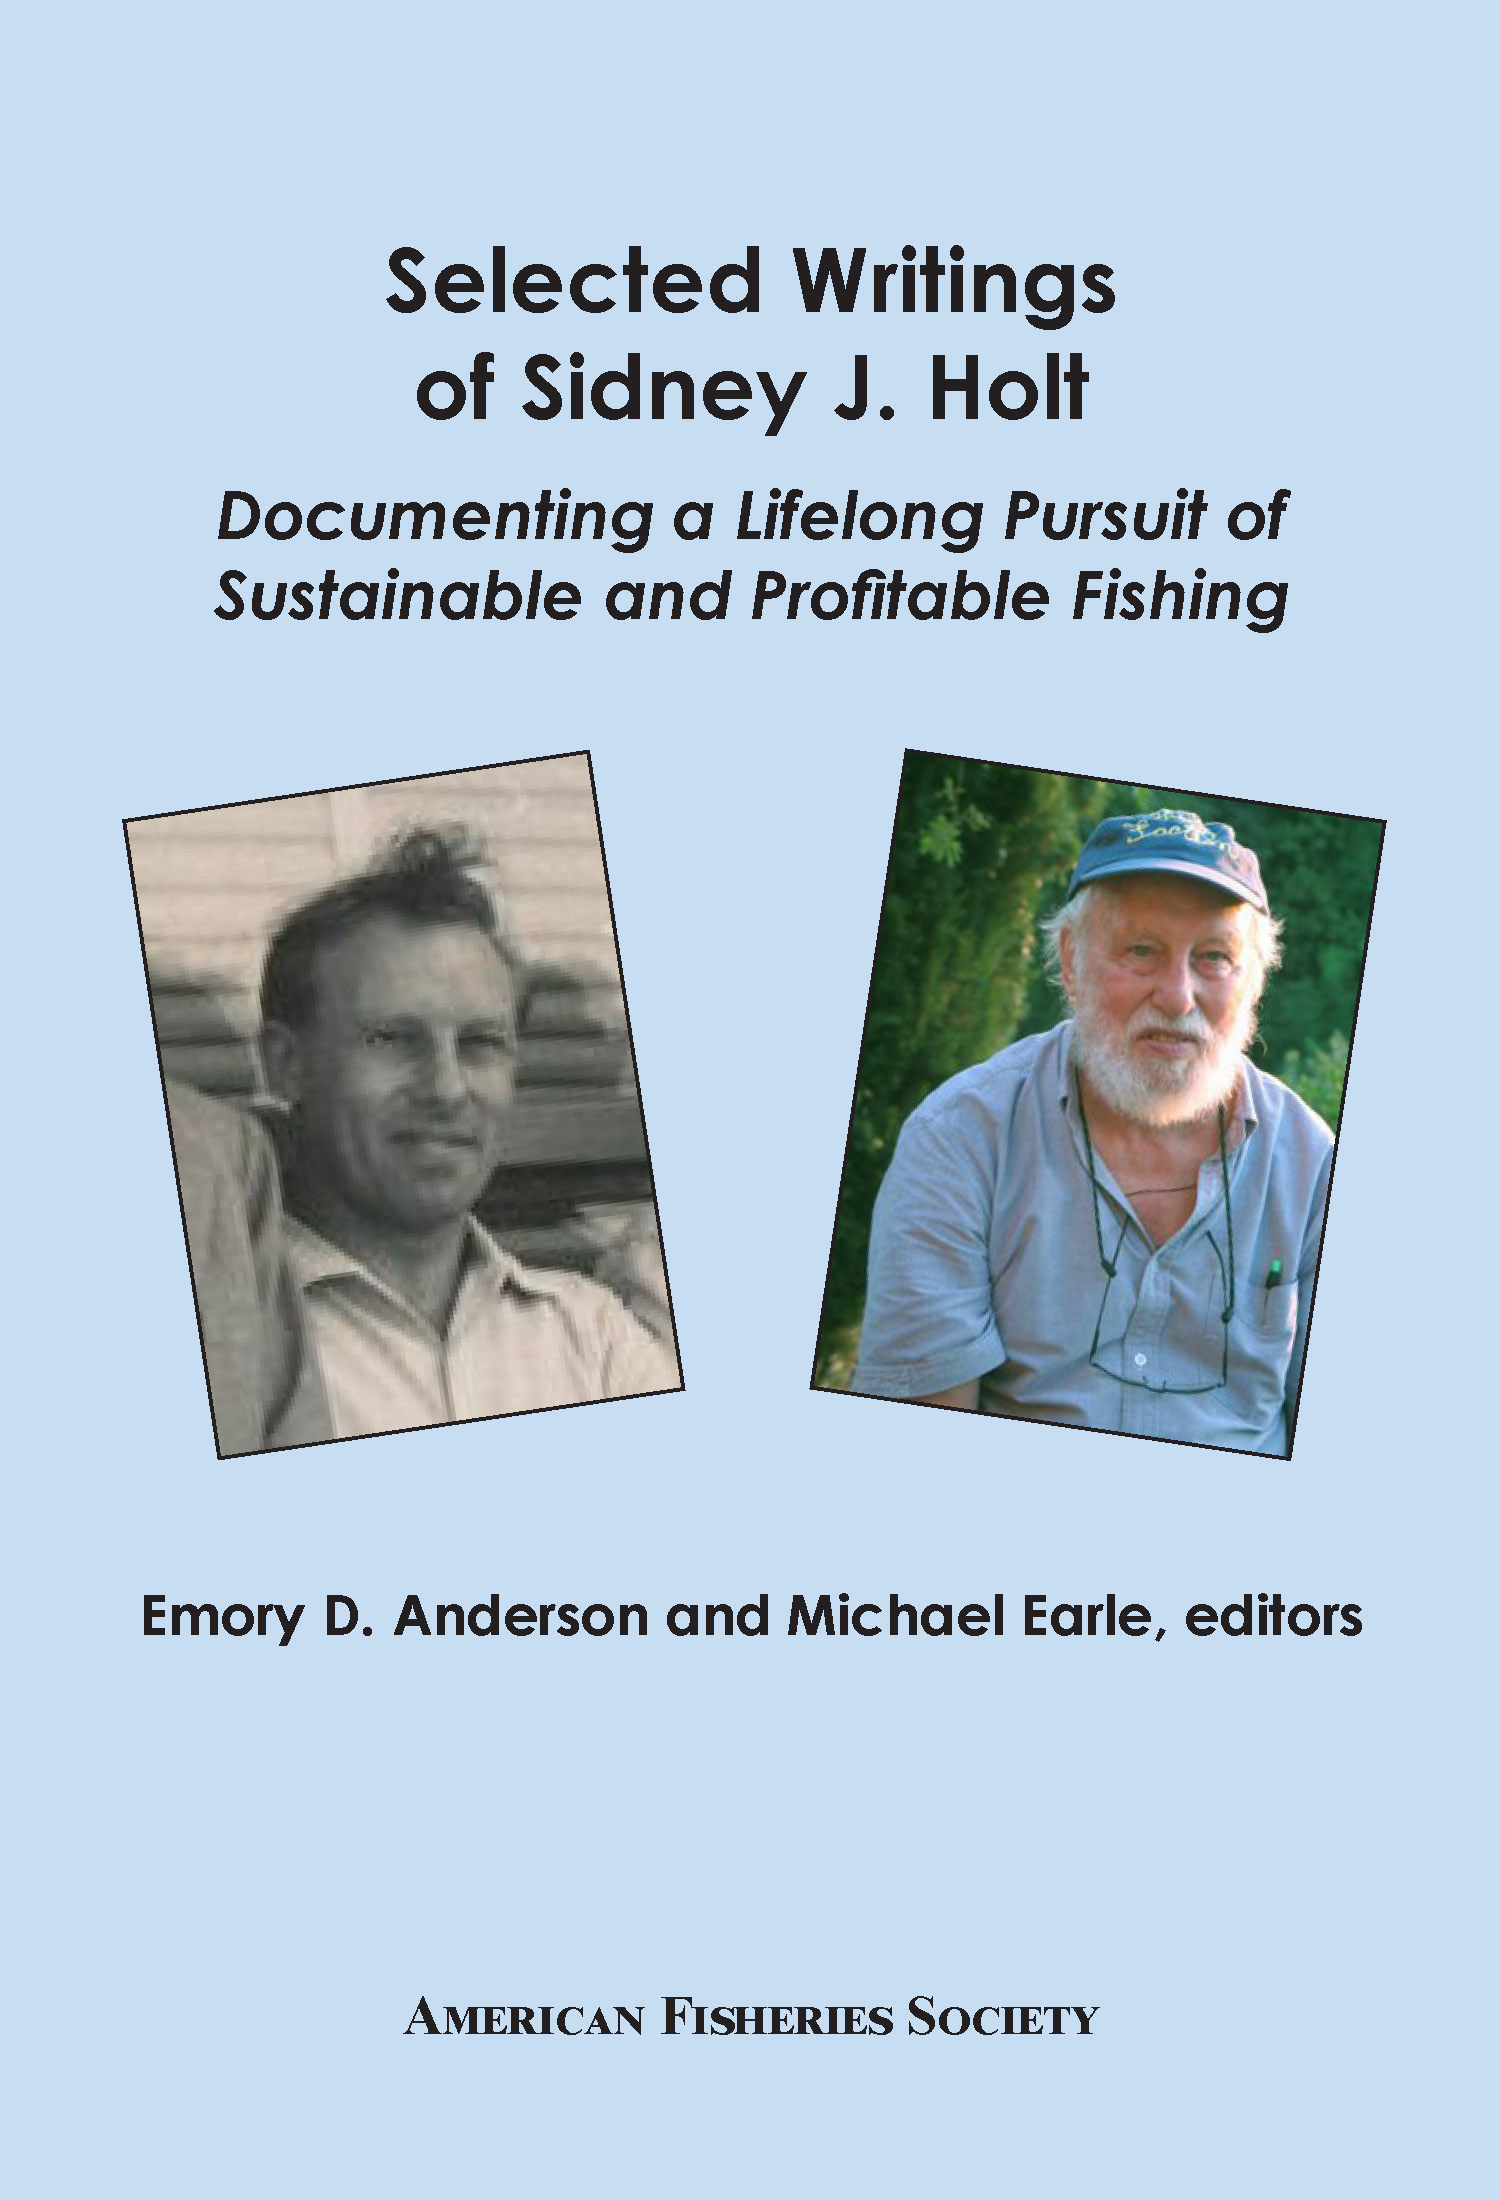 Sidney J. Holt Cover FRONT